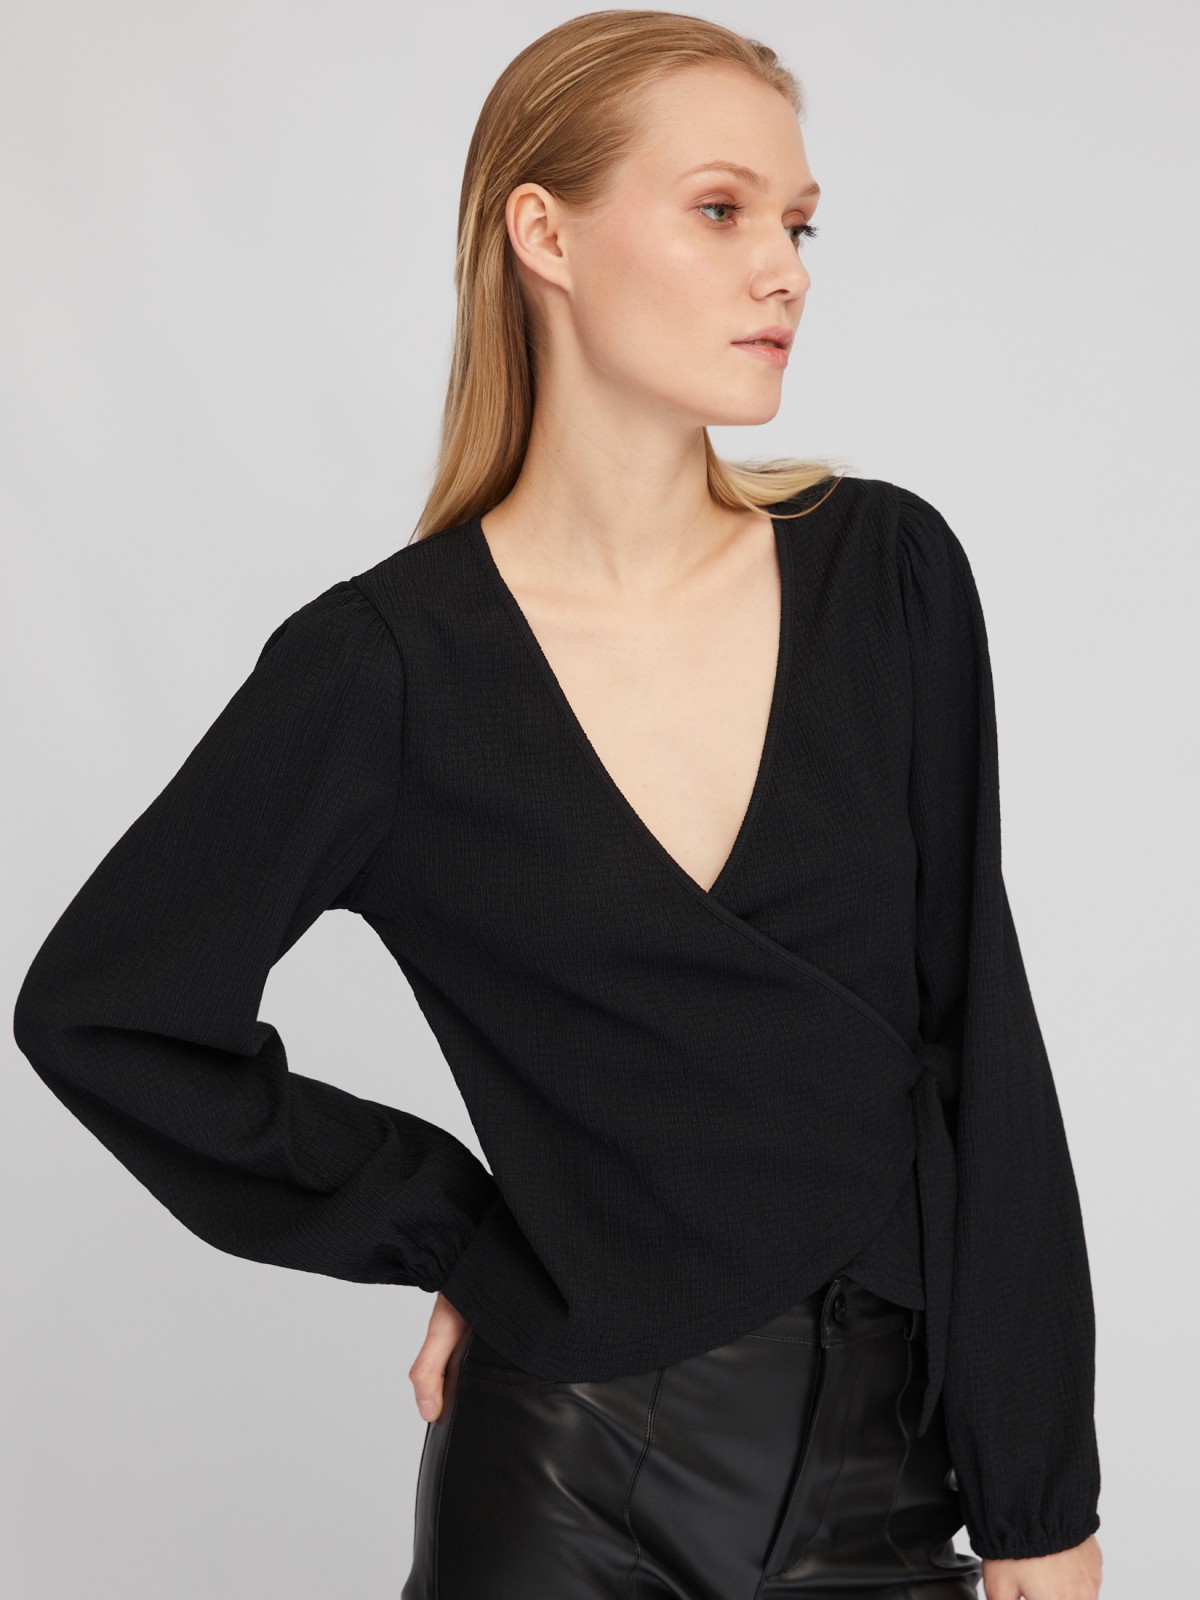 Укороченный топ-блузка на запах с объёмным рукавом zolla 024111162201, цвет черный, размер XS - фото 3